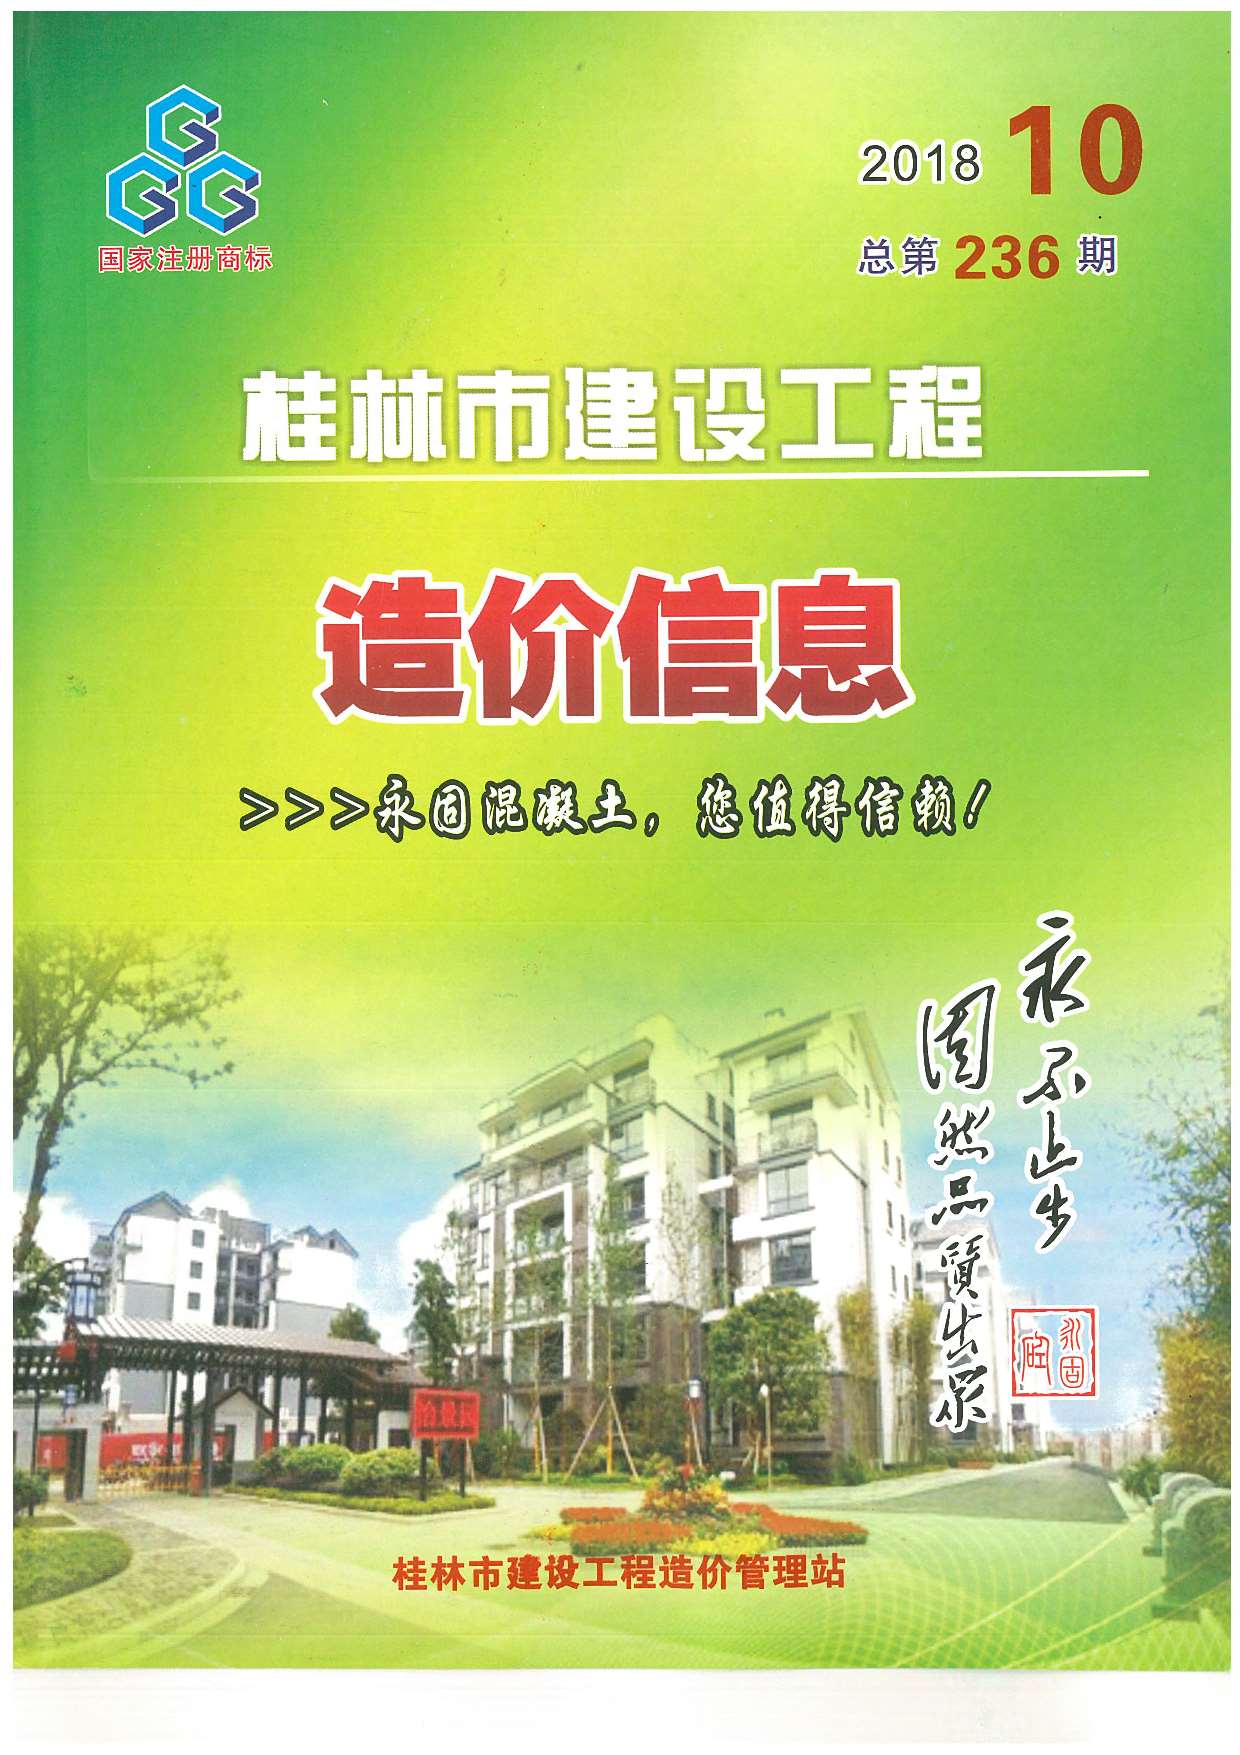 桂林市2018年10月信息价pdf扫描件